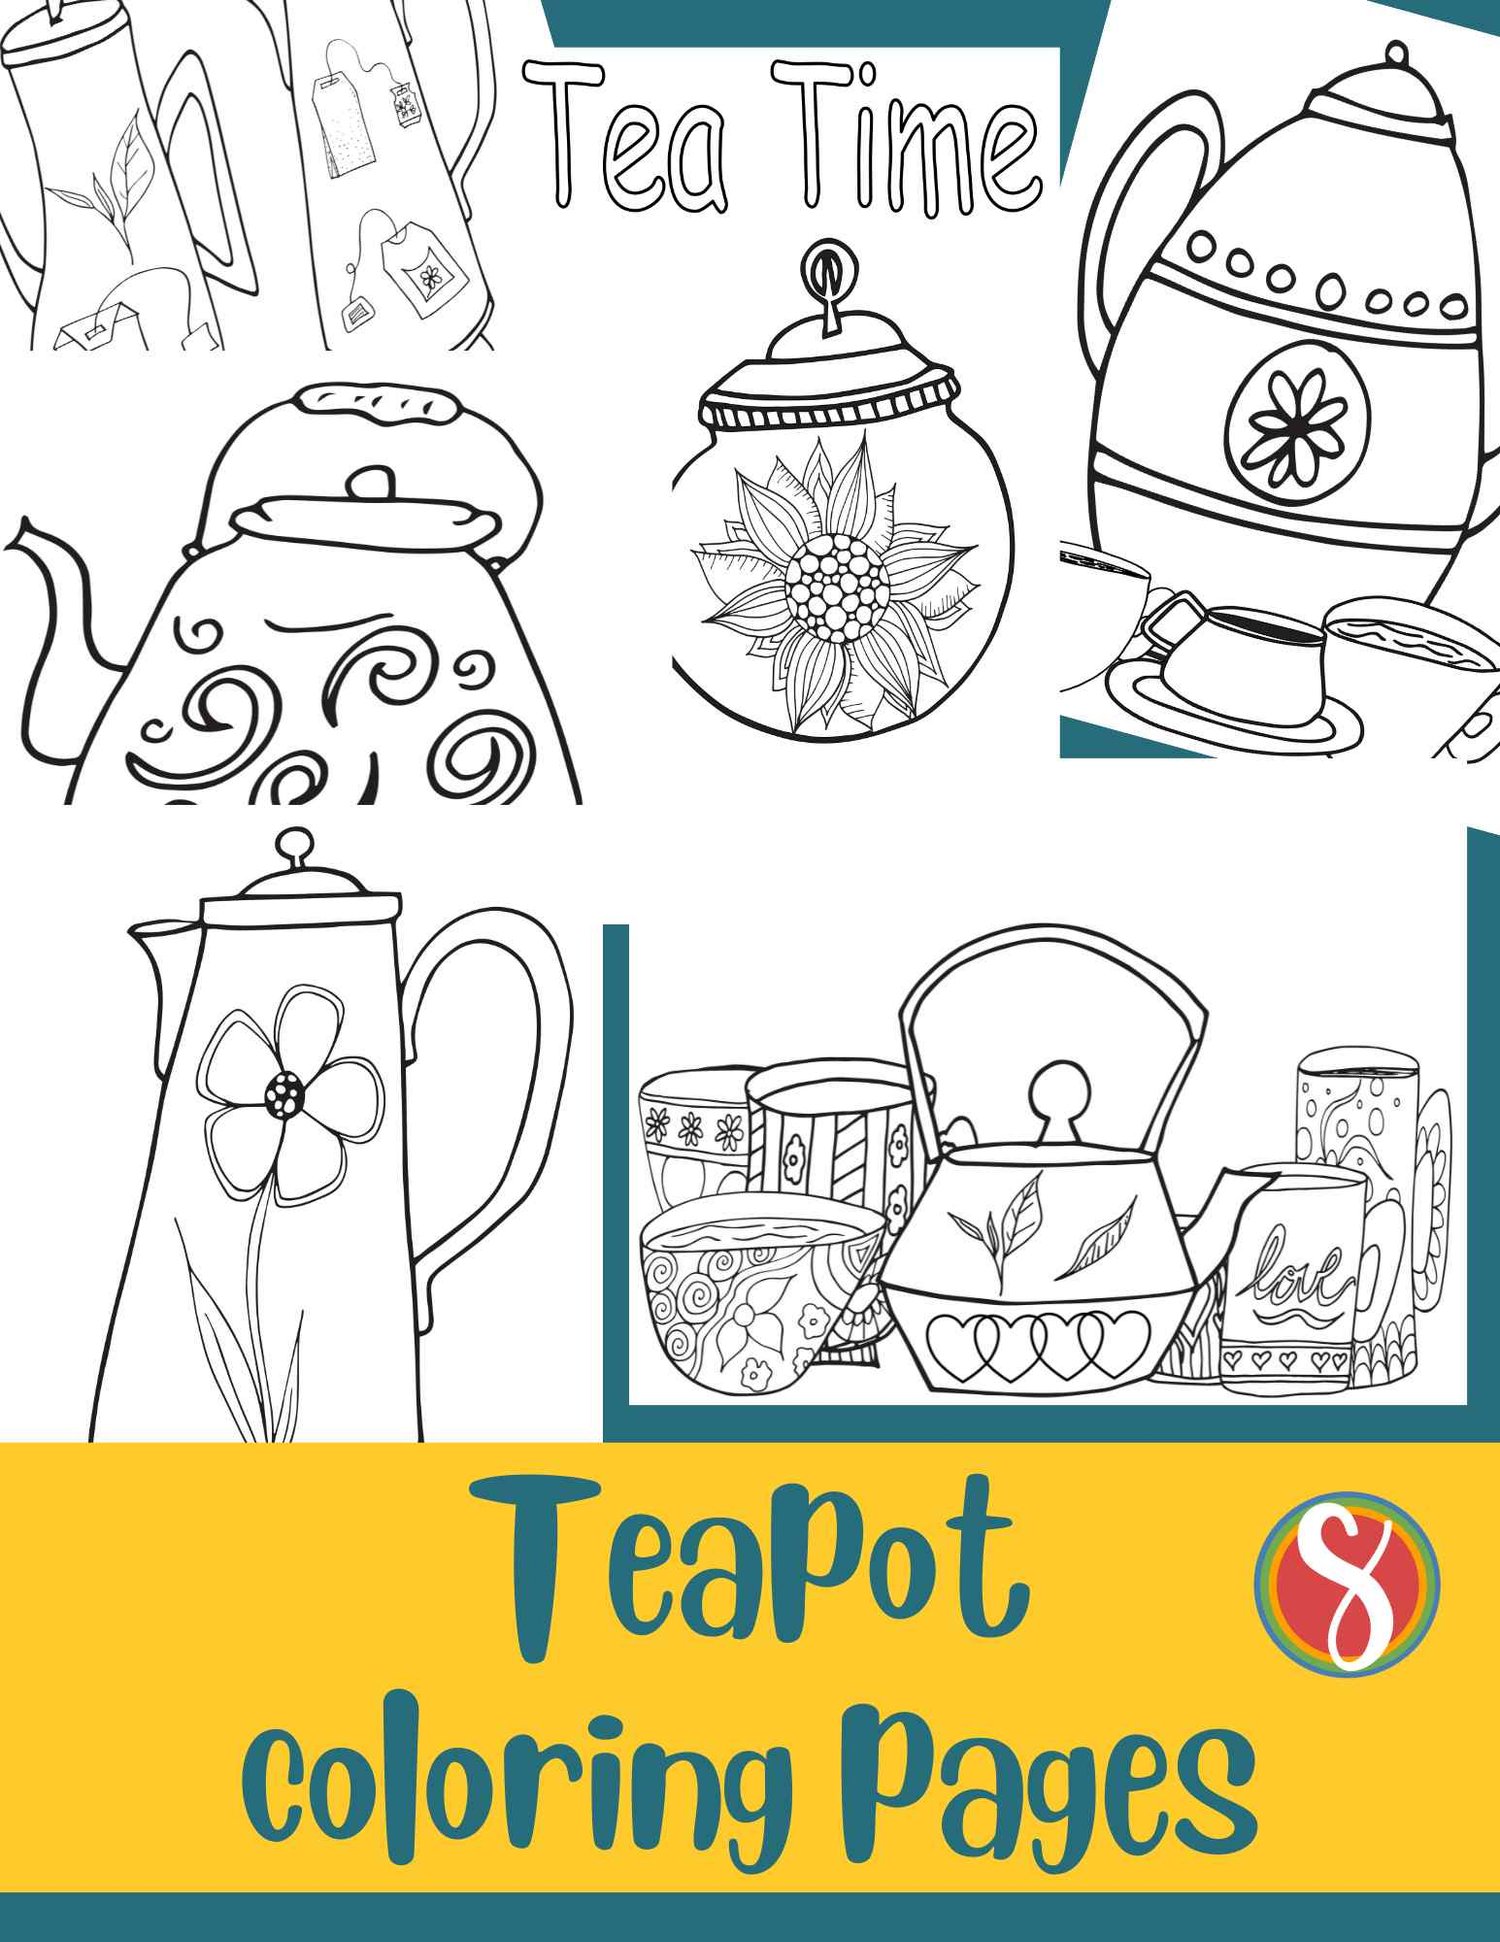 Free teapot coloring pages â stevie doodles